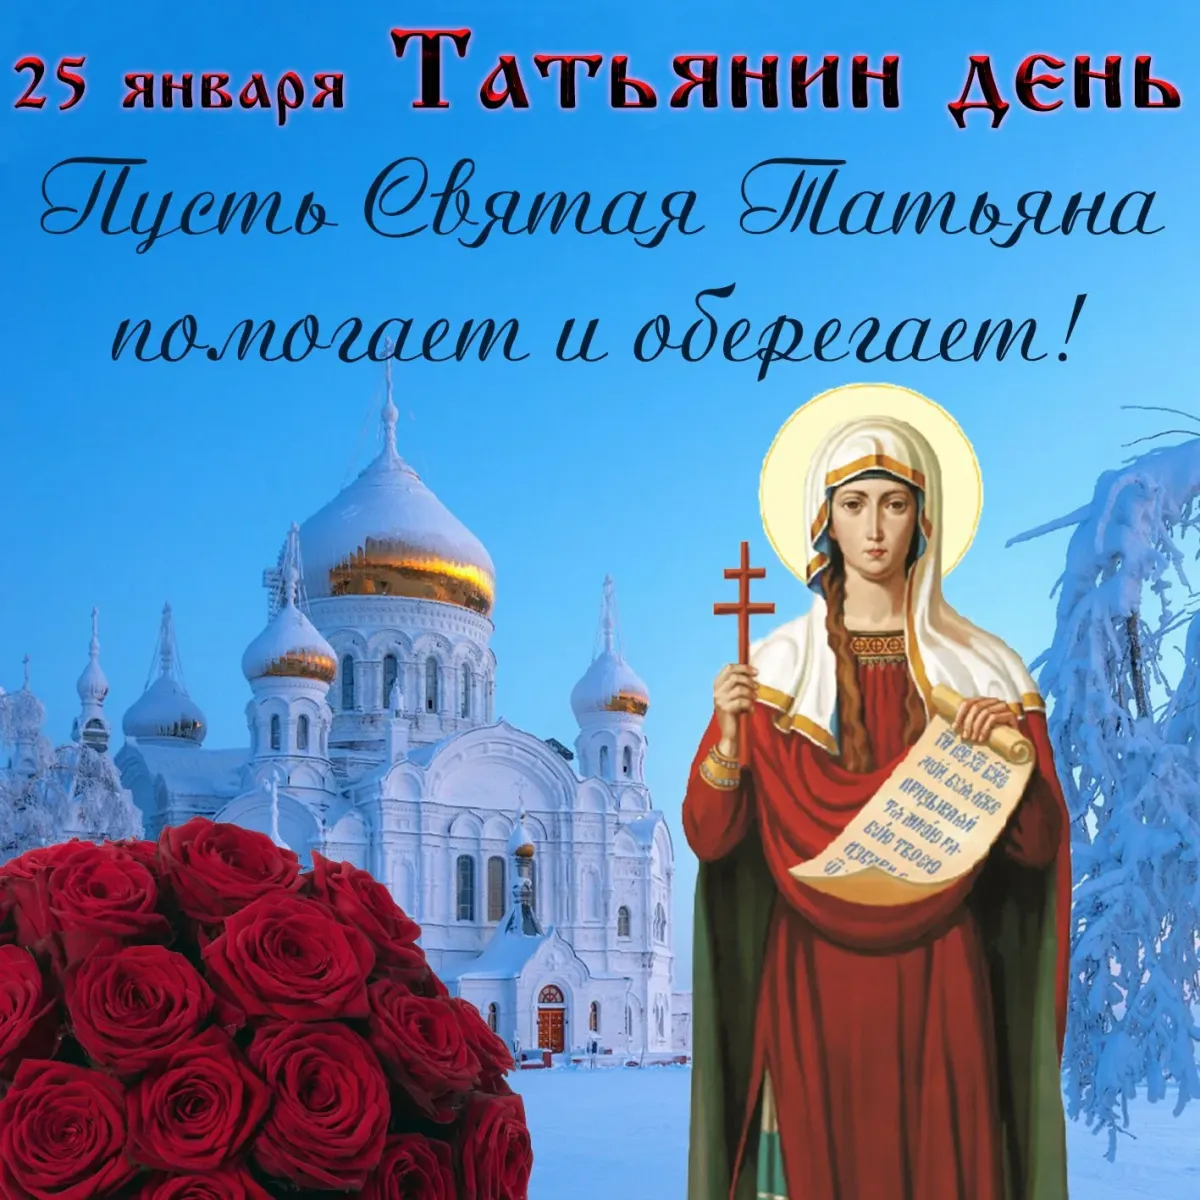 25 января открытки. 25 Января Святая мученица Татиана. Татьянин день поздравление. Татьянин день открытки с поздравлениями. Поздравления с днём Татьяны.